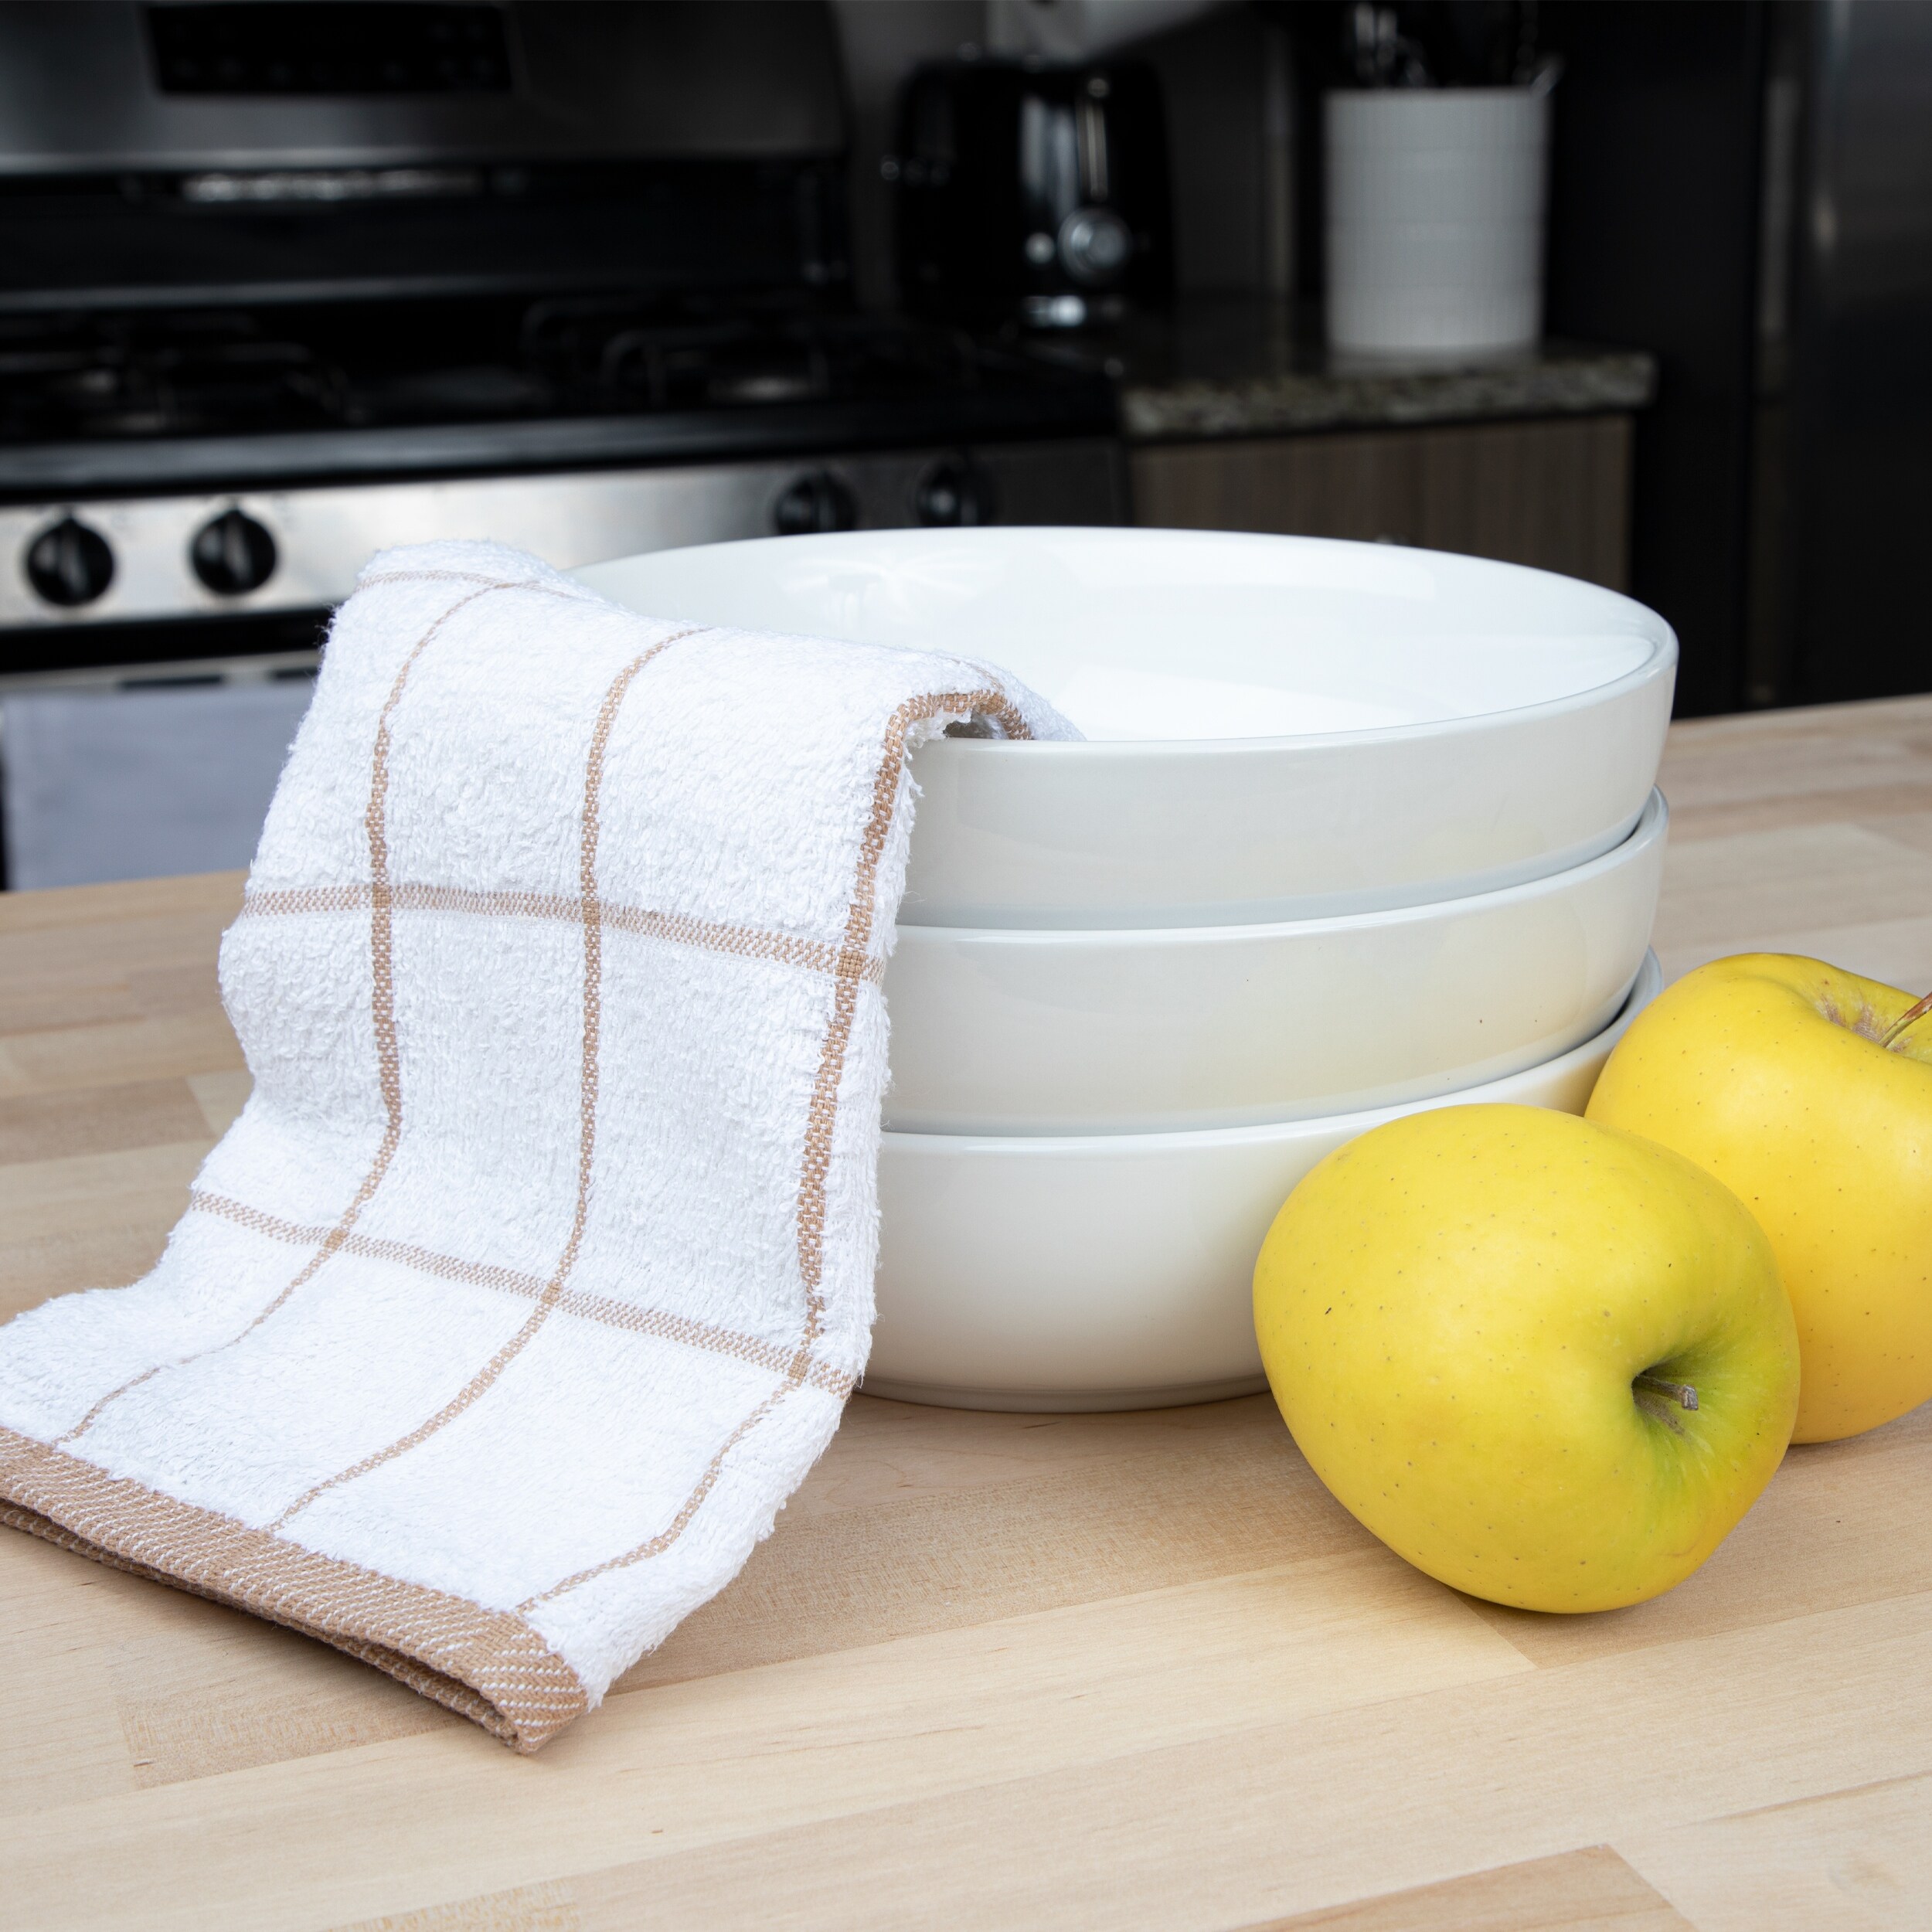 T-fal Textiles 9 Pack Kitchen Textile Set: Kitchen Towels, Dish